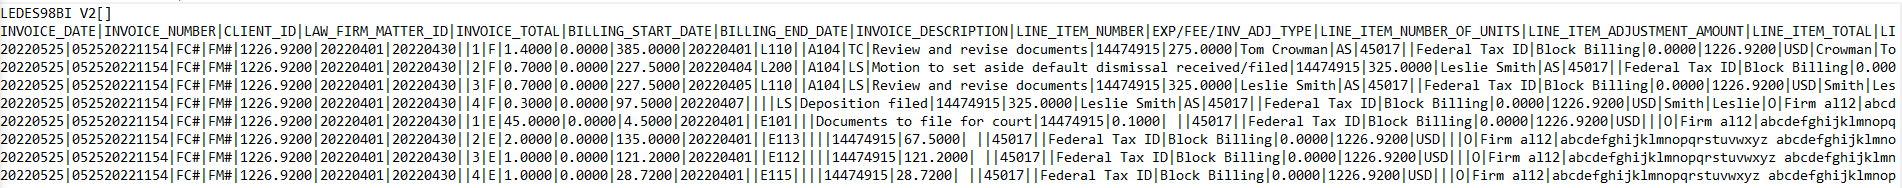 LEDES 1998BI V2 legal e-billing file with 51 fields